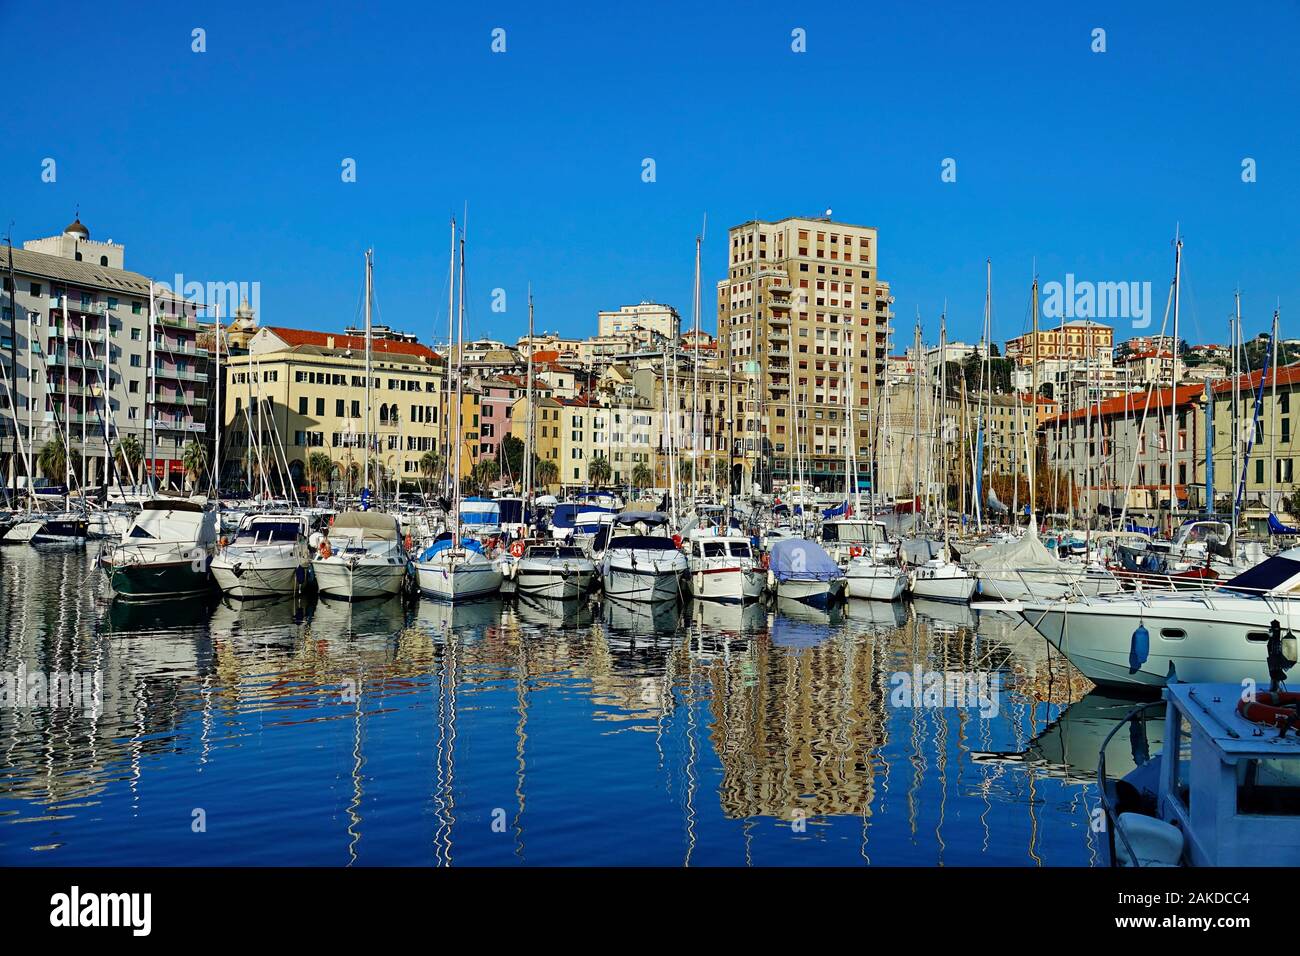 Stadtbild von Savona und Segelboote im Hafen. Savona, Italien - Januar 2020 Stockfoto